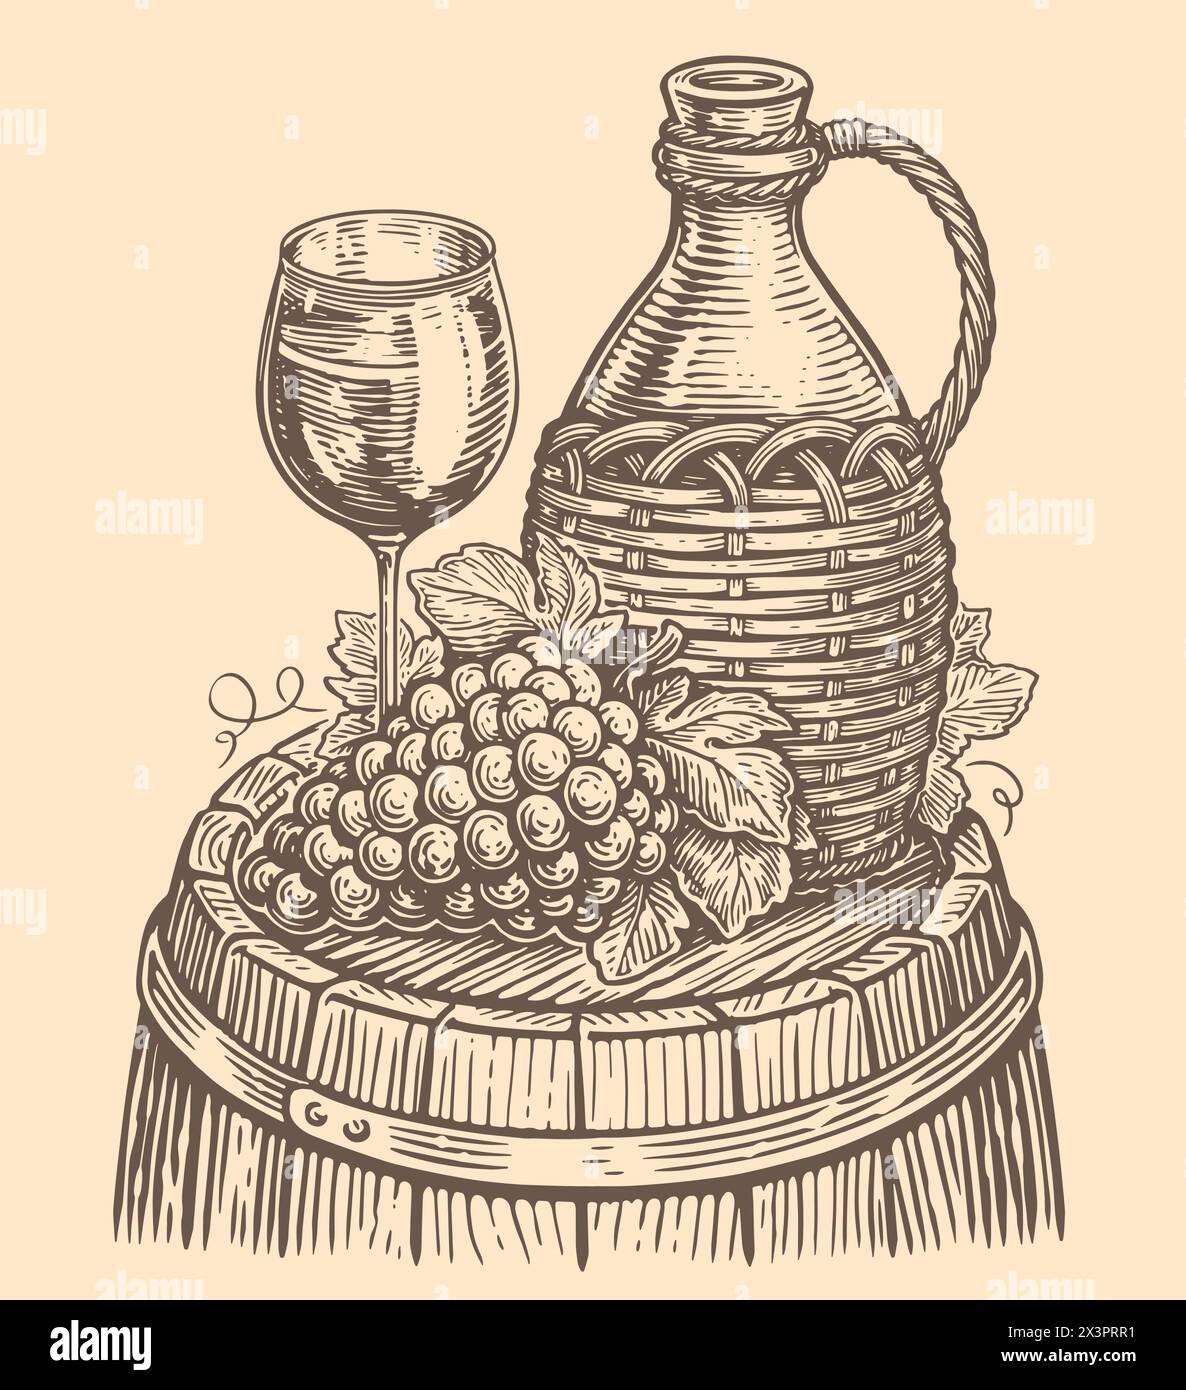 Concept de vin de nature morte. Cruche ou bouteille, fût de chêne, bouquet de raisins, verre. Esquisse vintage illustration vectorielle Illustration de Vecteur